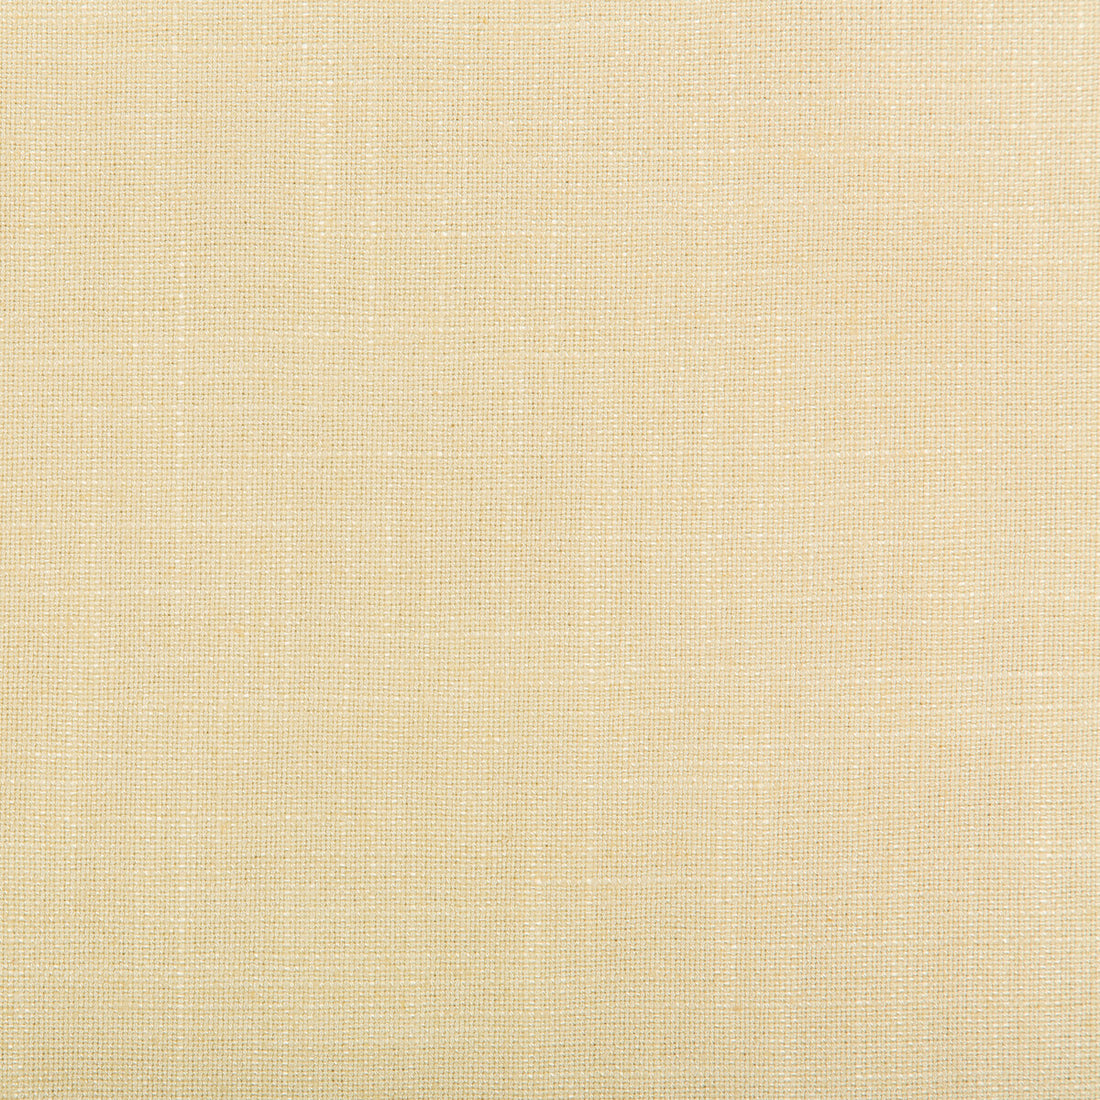 Aura fabric in frappe color - pattern 35520.1416.0 - by Kravet Design